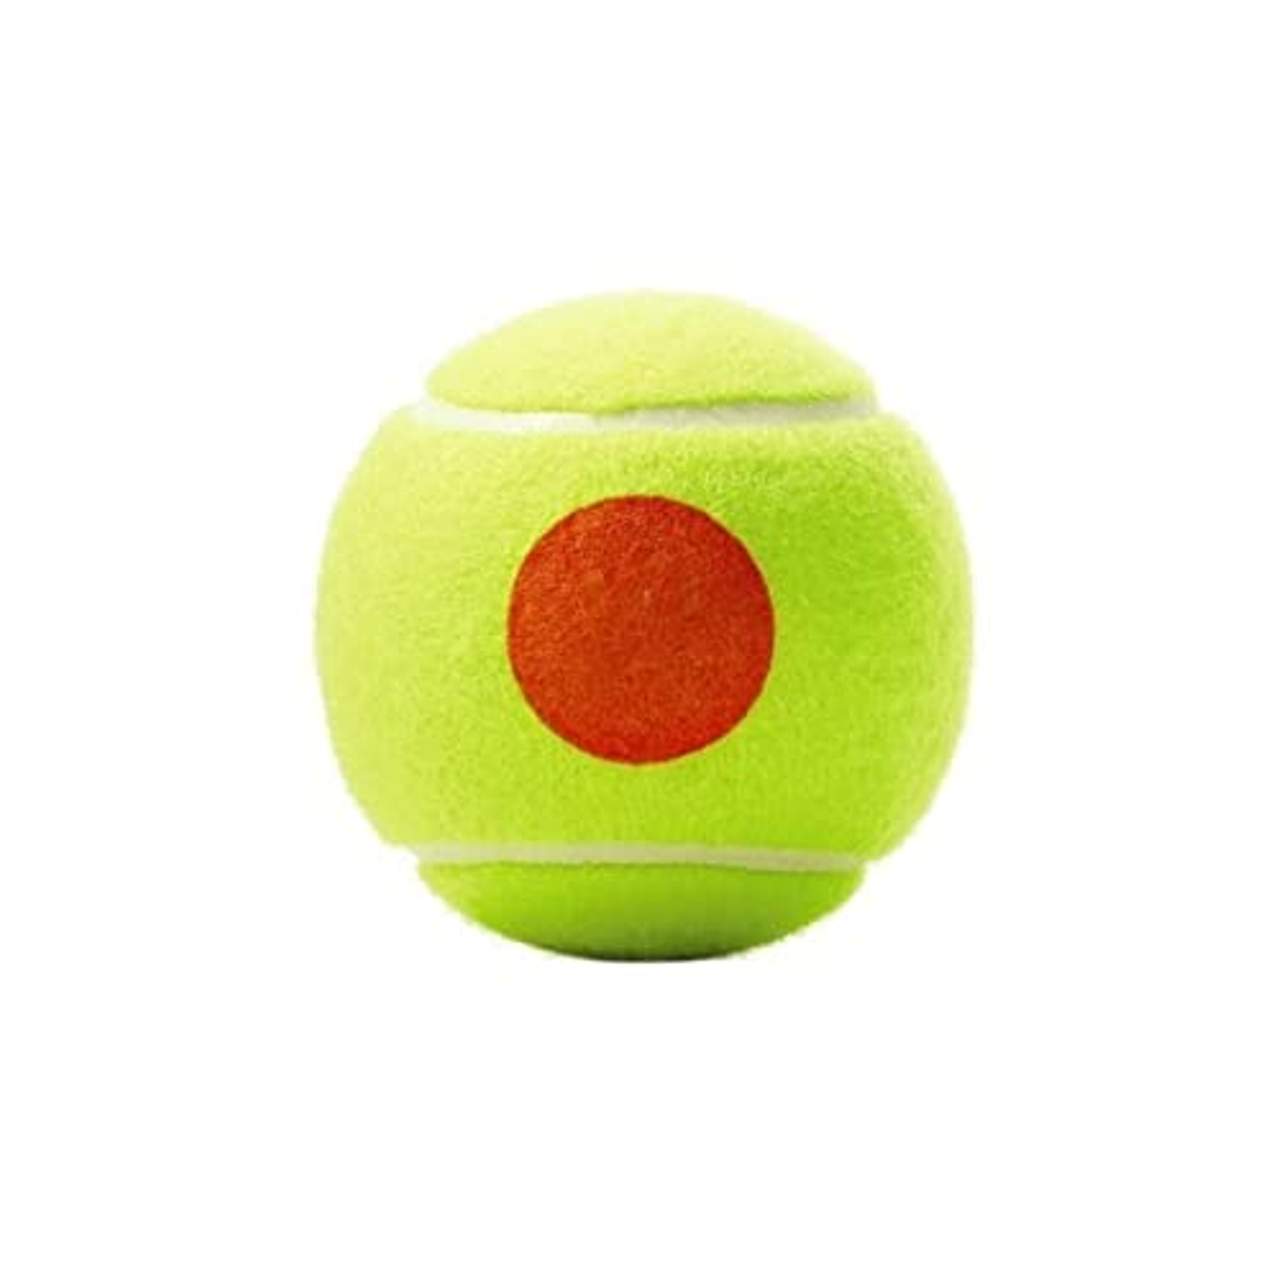 Wilson Tennisbälle Starter Orange